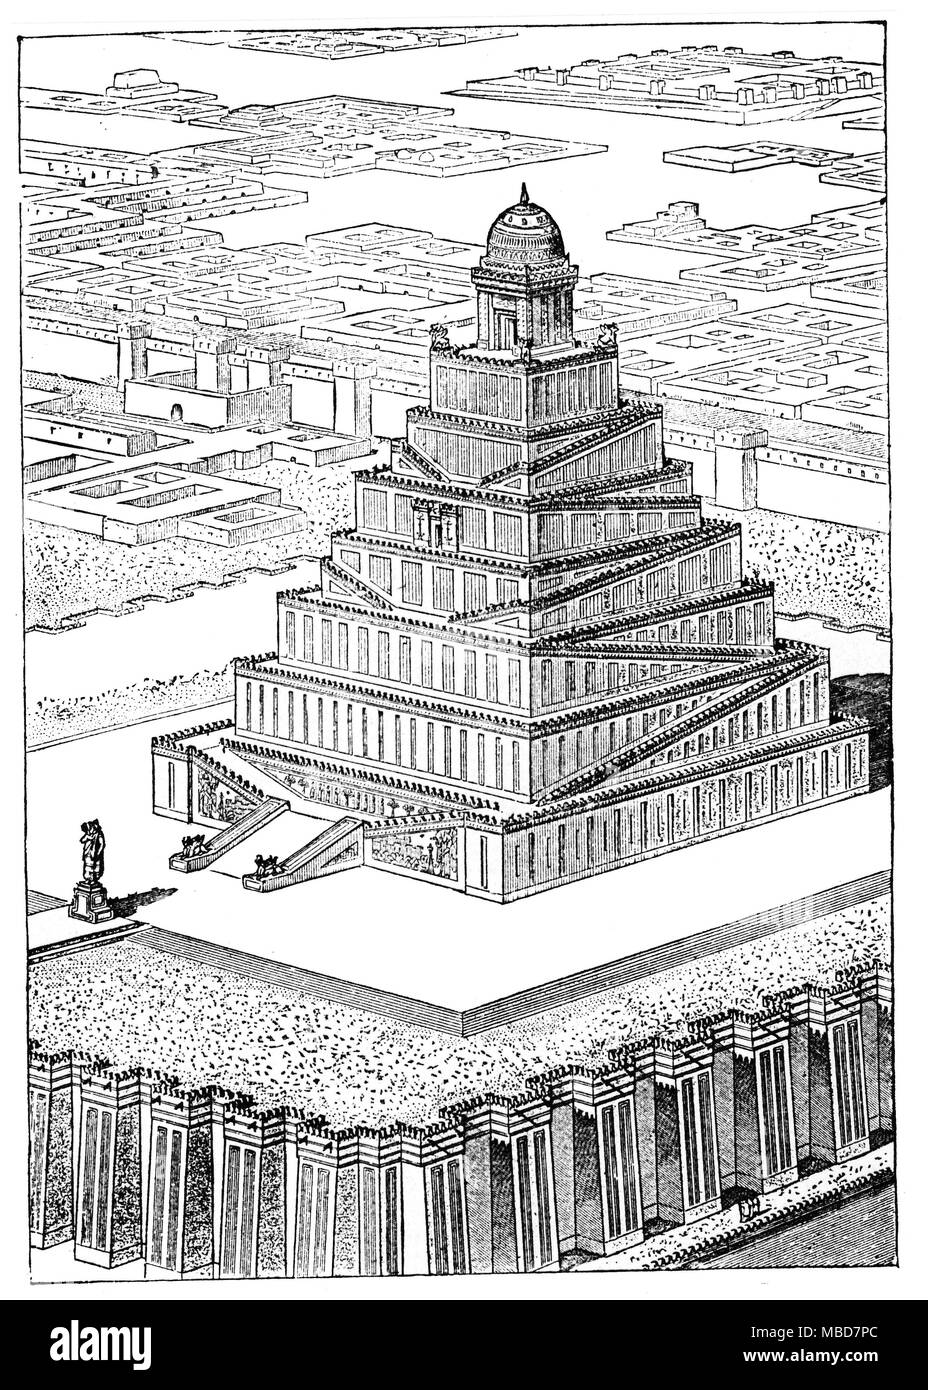 La mythologie babylonienne une ancienne ziggourat, restauré. De Zénaïde A. Ragozin, Chaldée depuis les premiers temps de la montée de l'Assyrie,1889 Banque D'Images